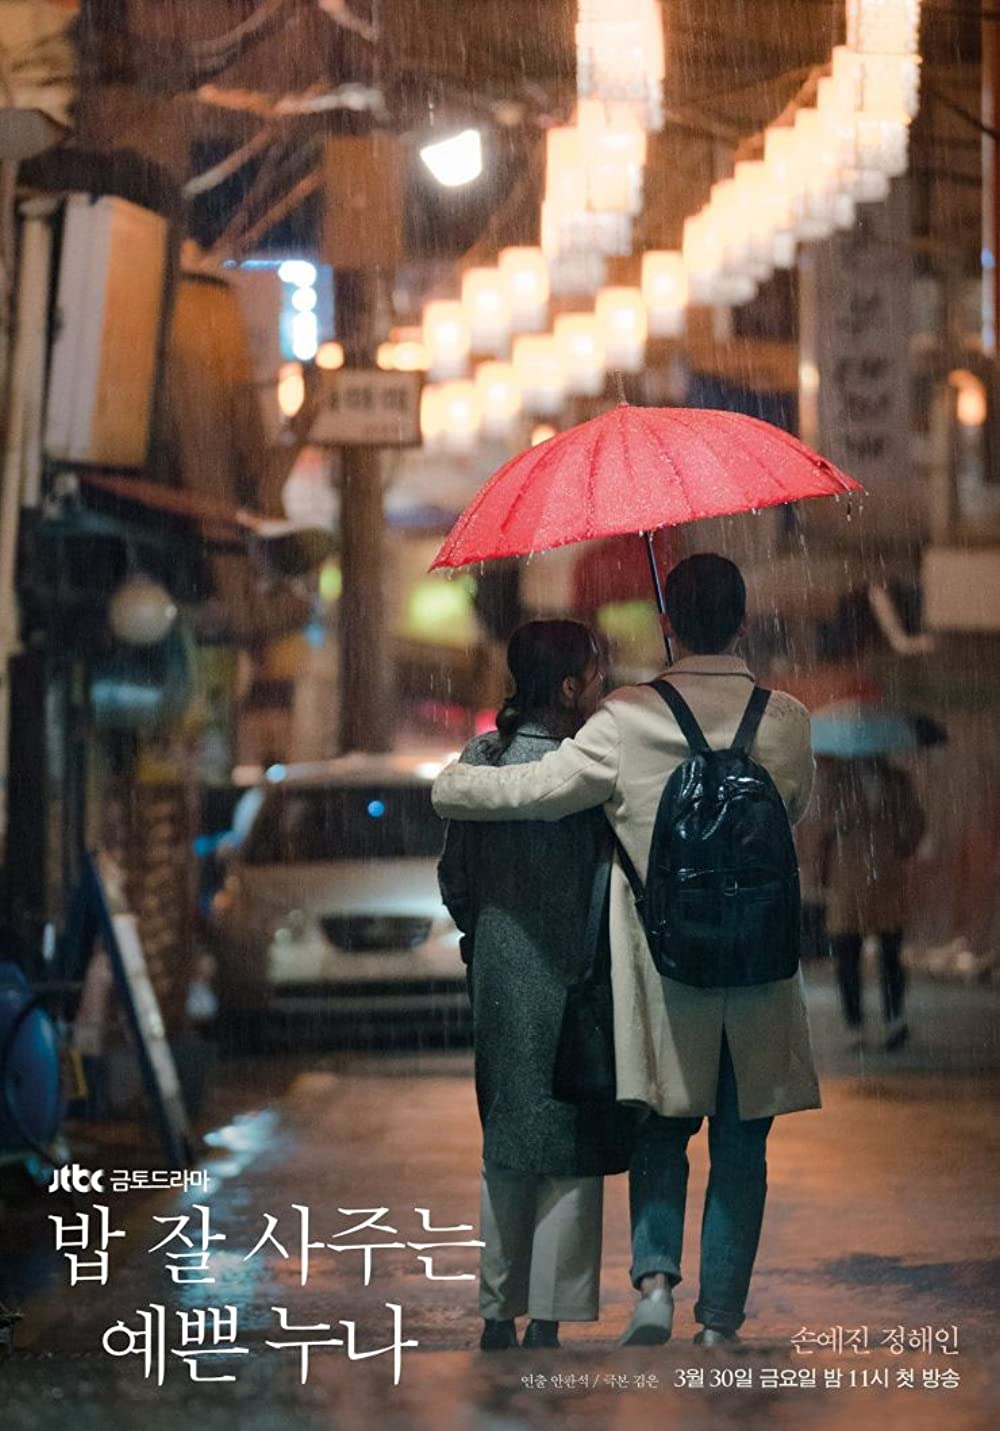 7 Drama Korea kisahkan cinta beda usia, ada yang kontroversial